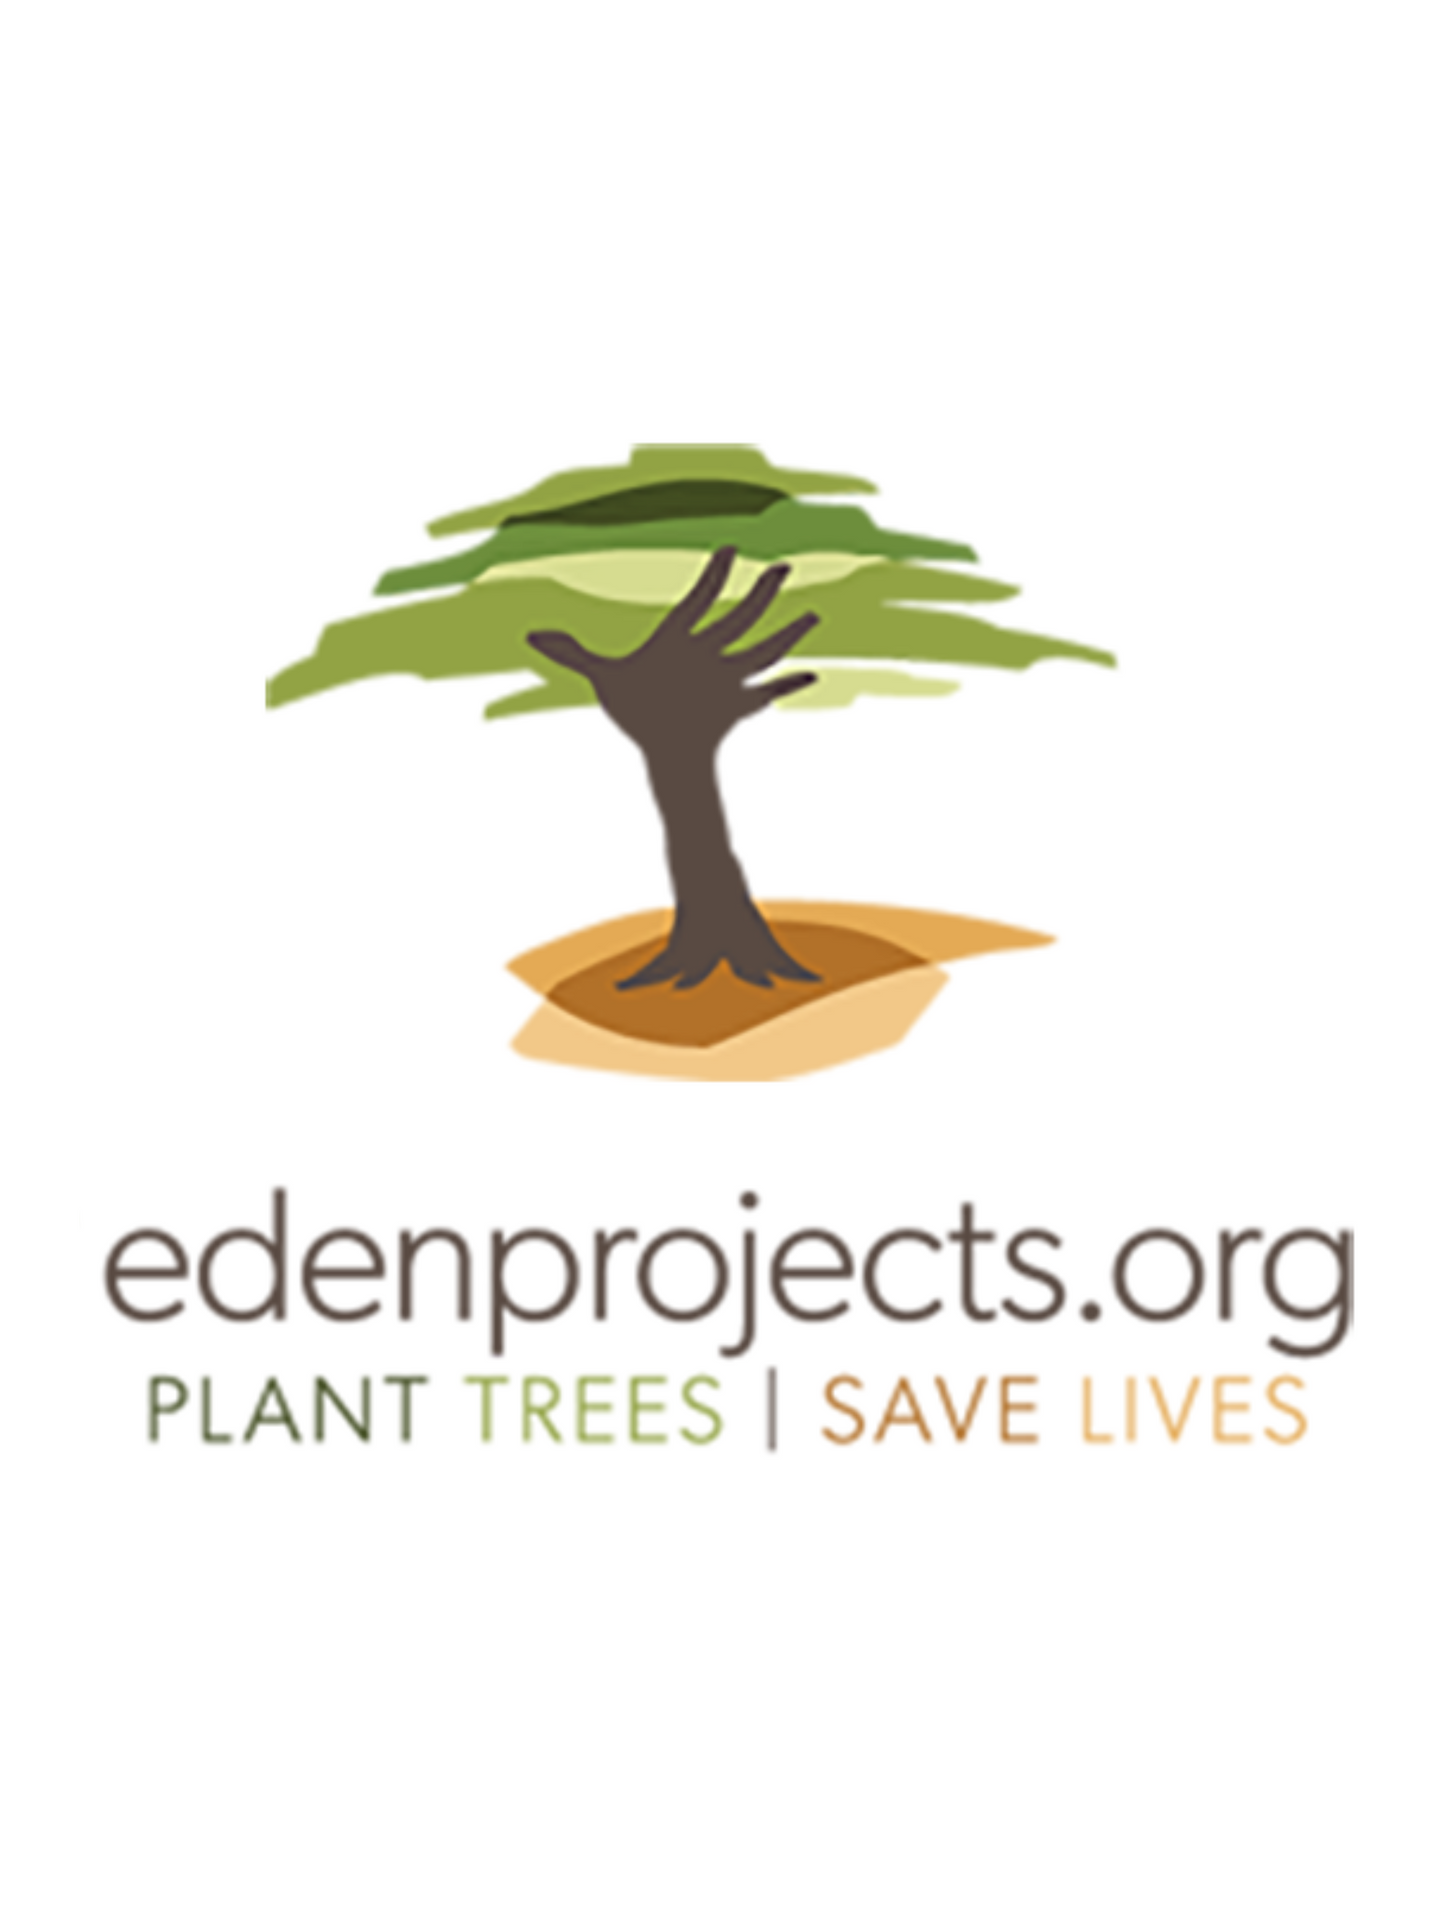 Project Eden: Reforestation